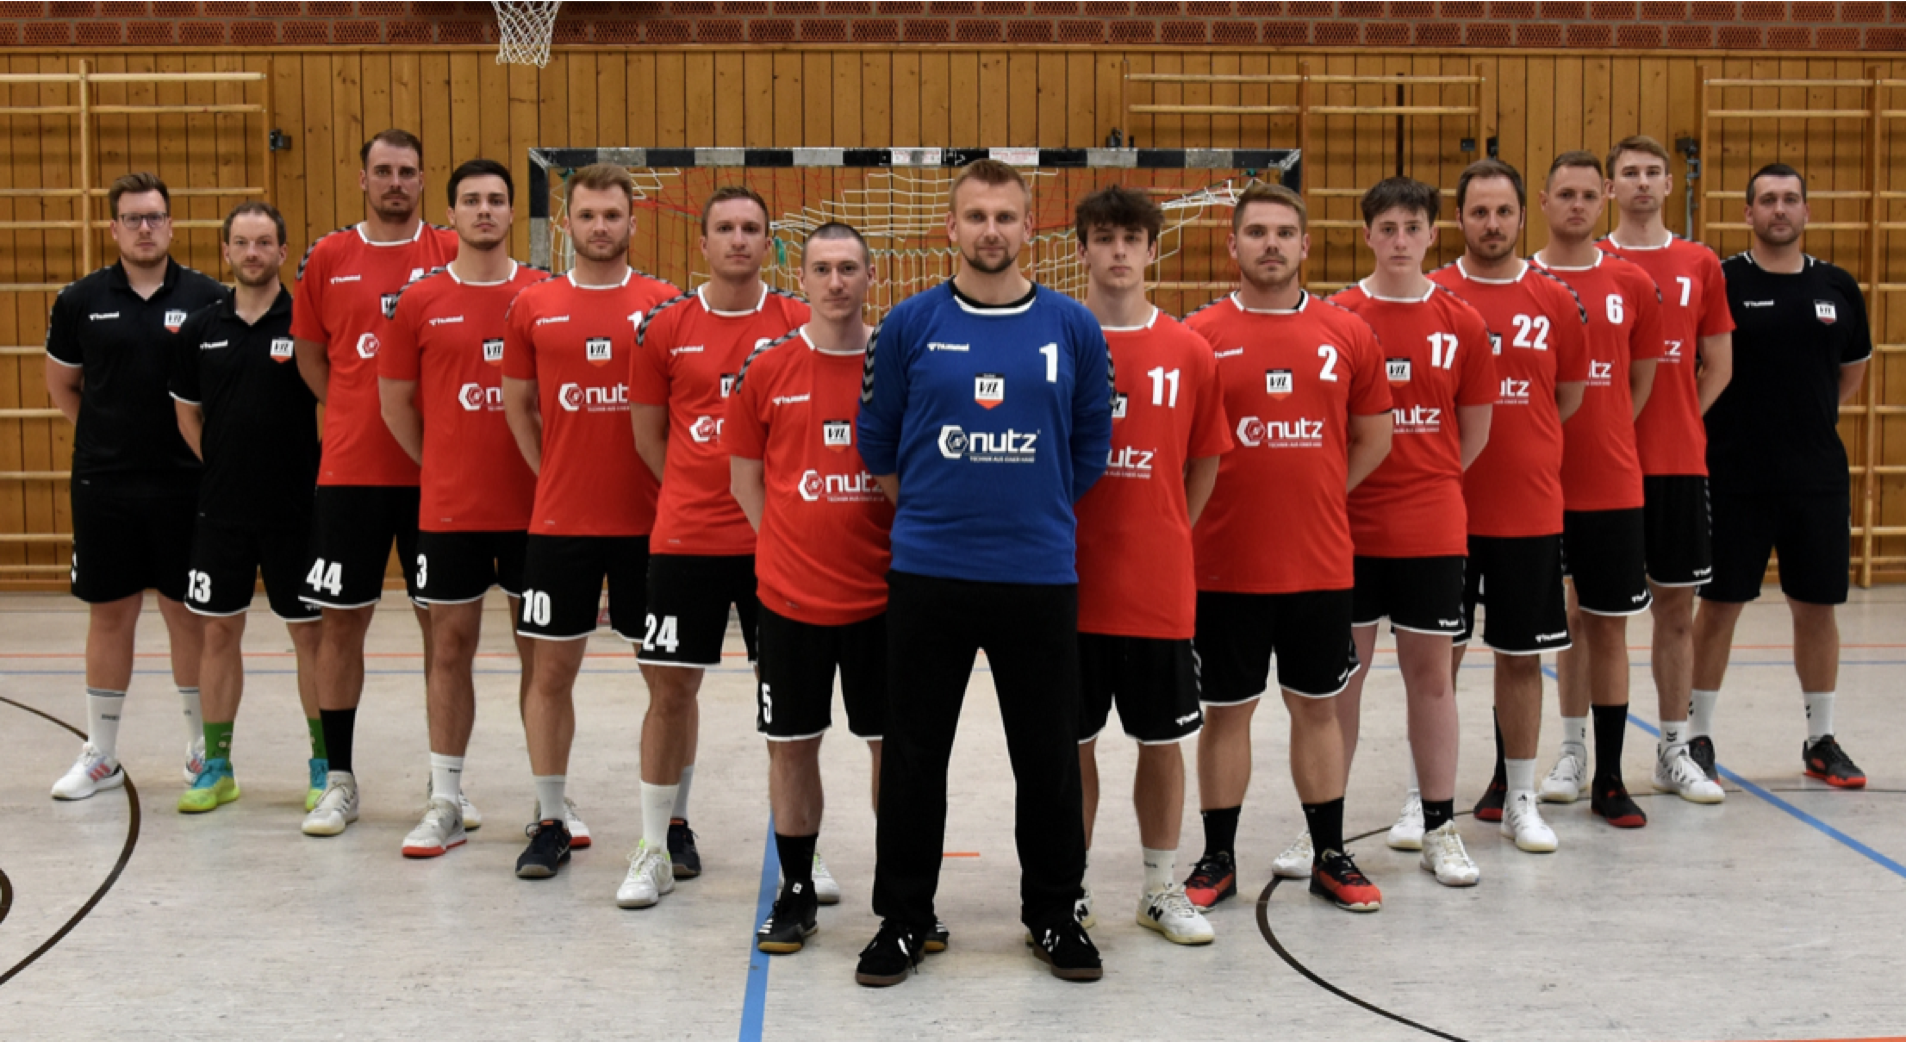 Neuer Schwung für den Handball in Waldkraiburg: Ambitionen und Neuerungen für die kommende Spielzeit